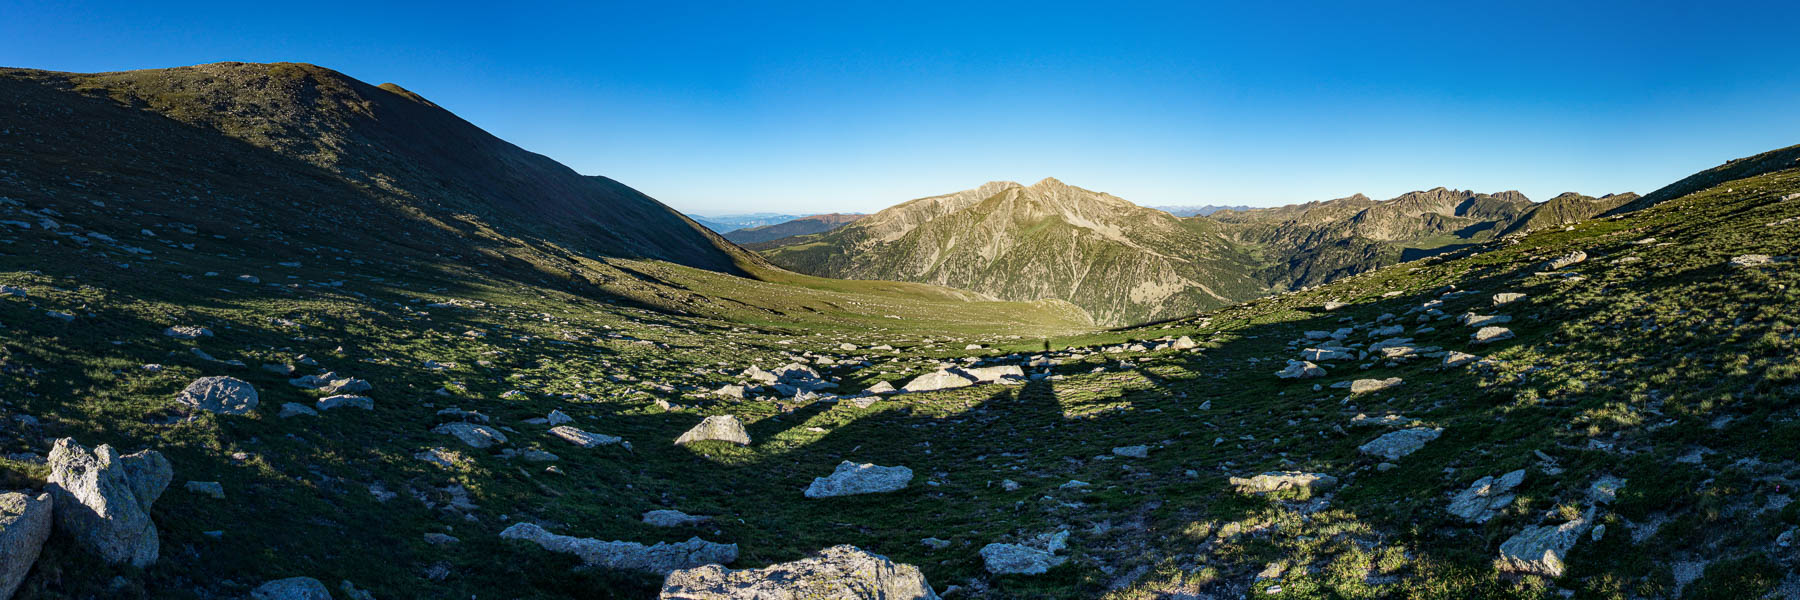 Portella de Calm Colomer, 2670 m : vue ouest